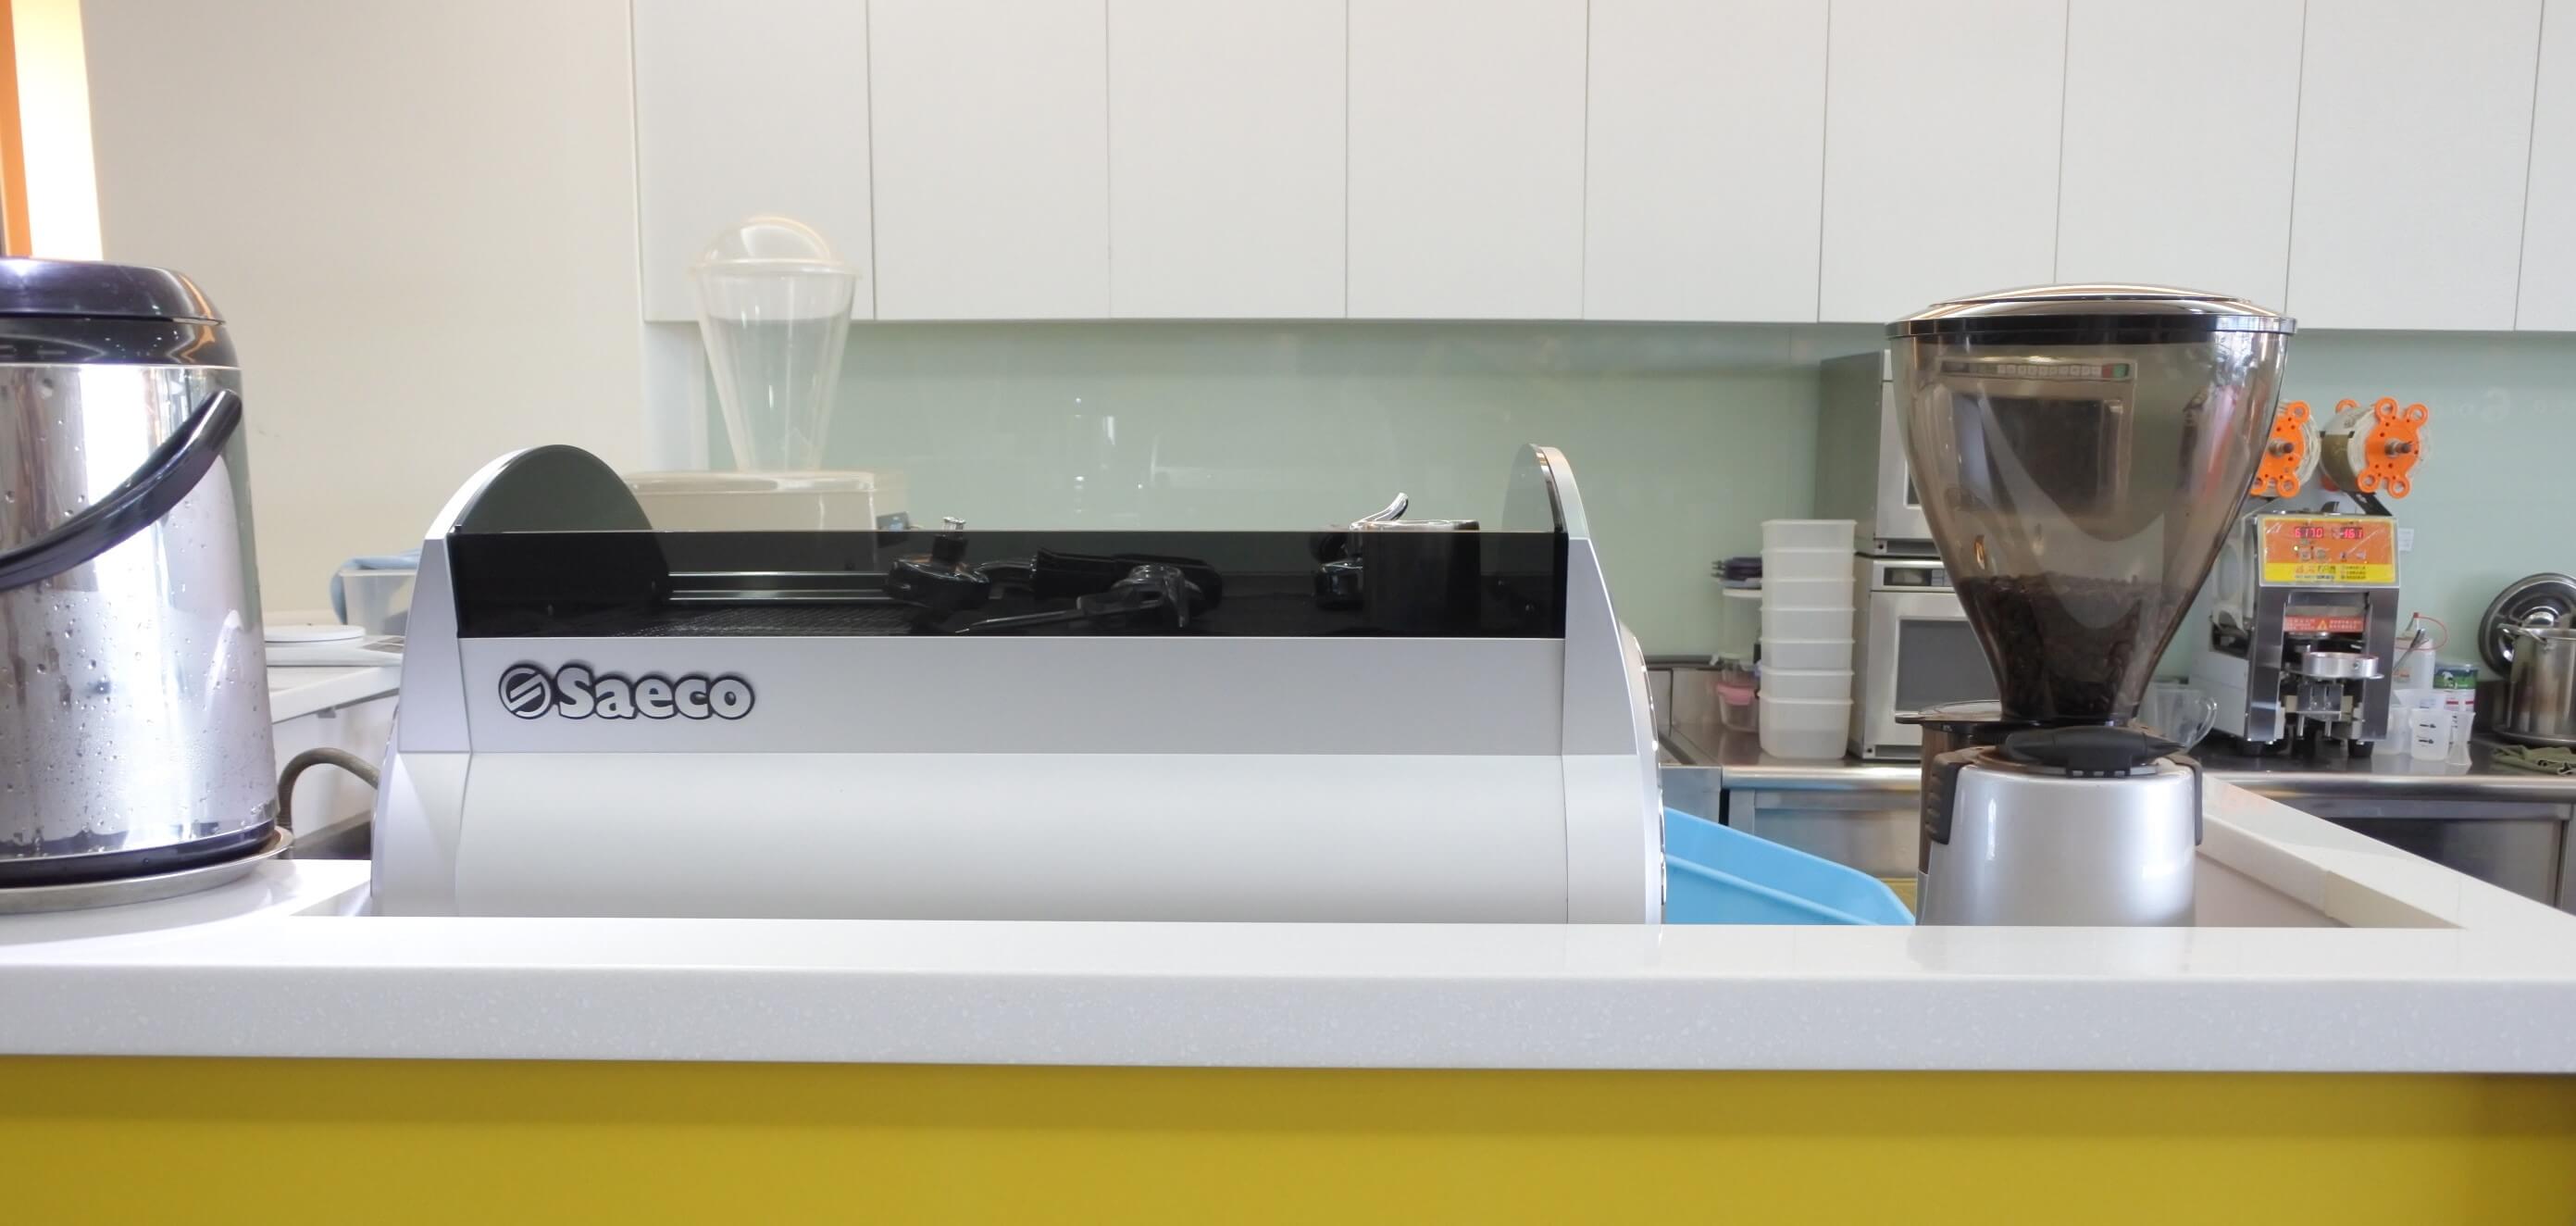 半自動咖啡機 SE200 Saeco 搭配大力士磨豆機 Saeco 營業用專業型機種